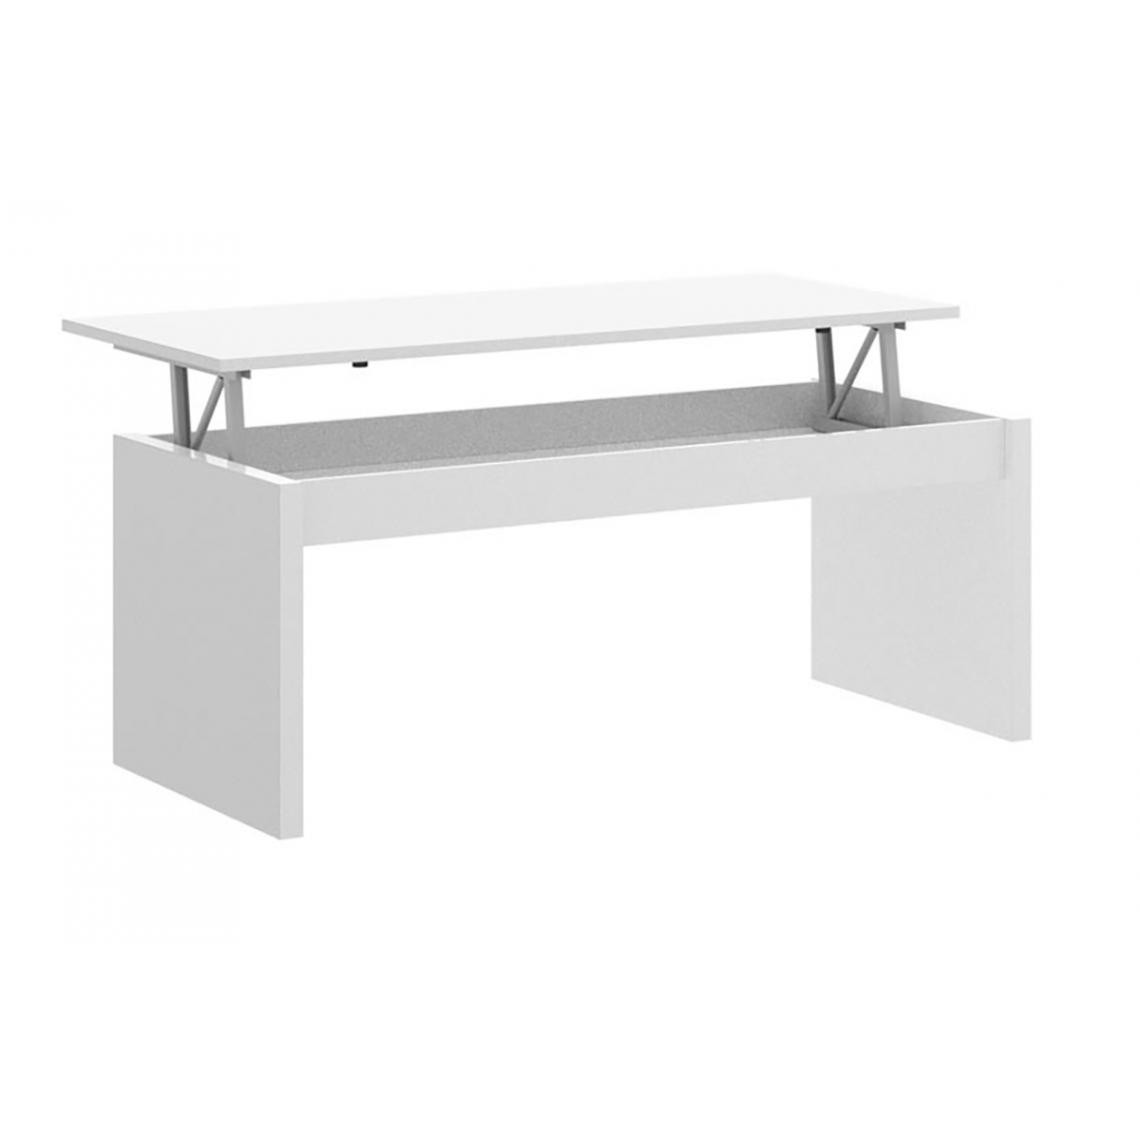 Pegane - Table basse modulable coloris blanc brillant - Longueur 102 x Profondeur 50 x Hauteur 43 cm - Tables basses